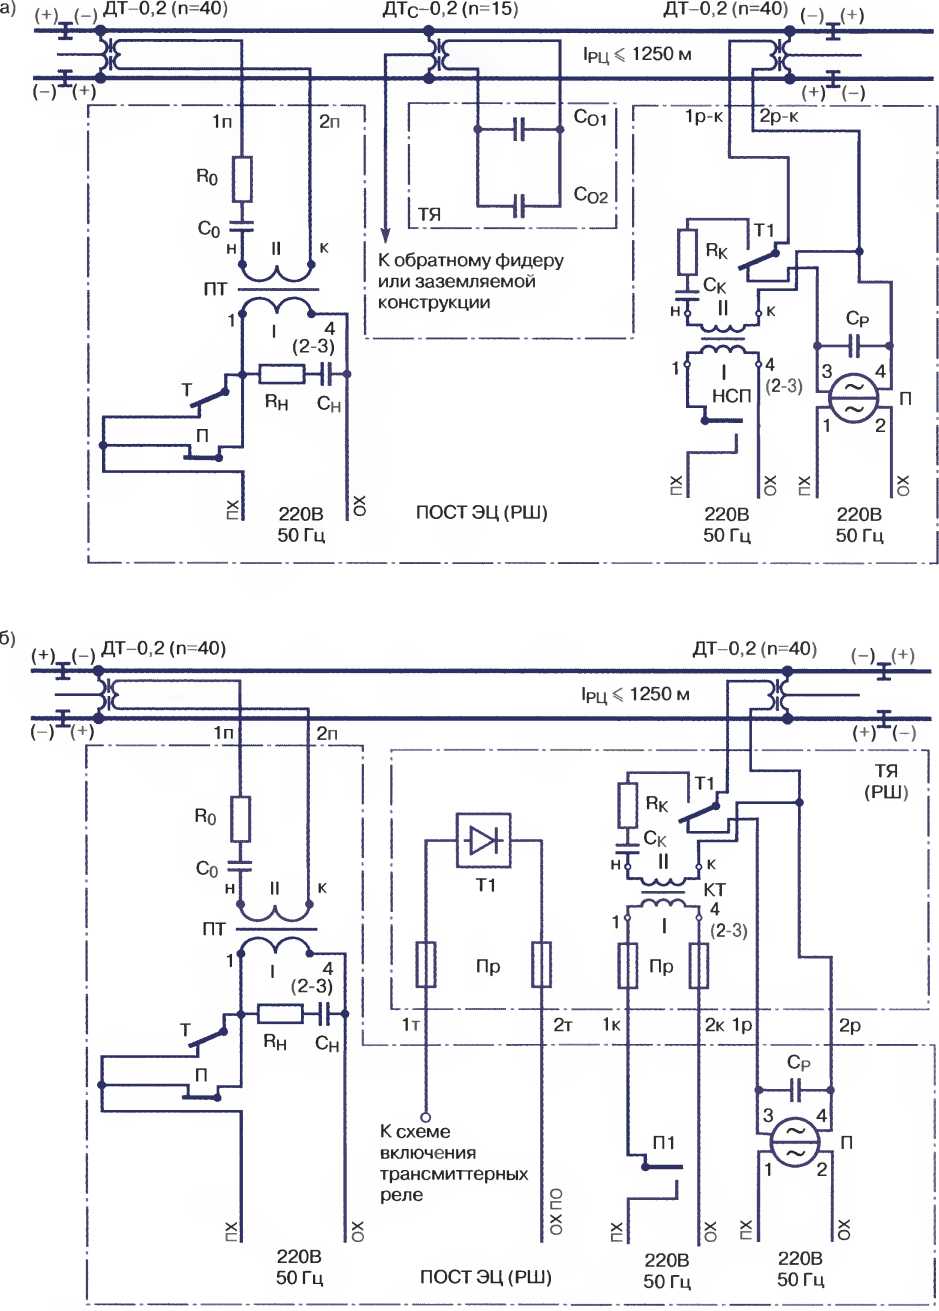 Двухниточная РЦ переменного тока 50 Гц с реле ДСР-12, двумя ДТ-0,6-500, наложением кодовых сигналов АЛ СИ с питающего и релейного концов (а) и одним ДТ-0,2-500 без наложения кодовых сигналов